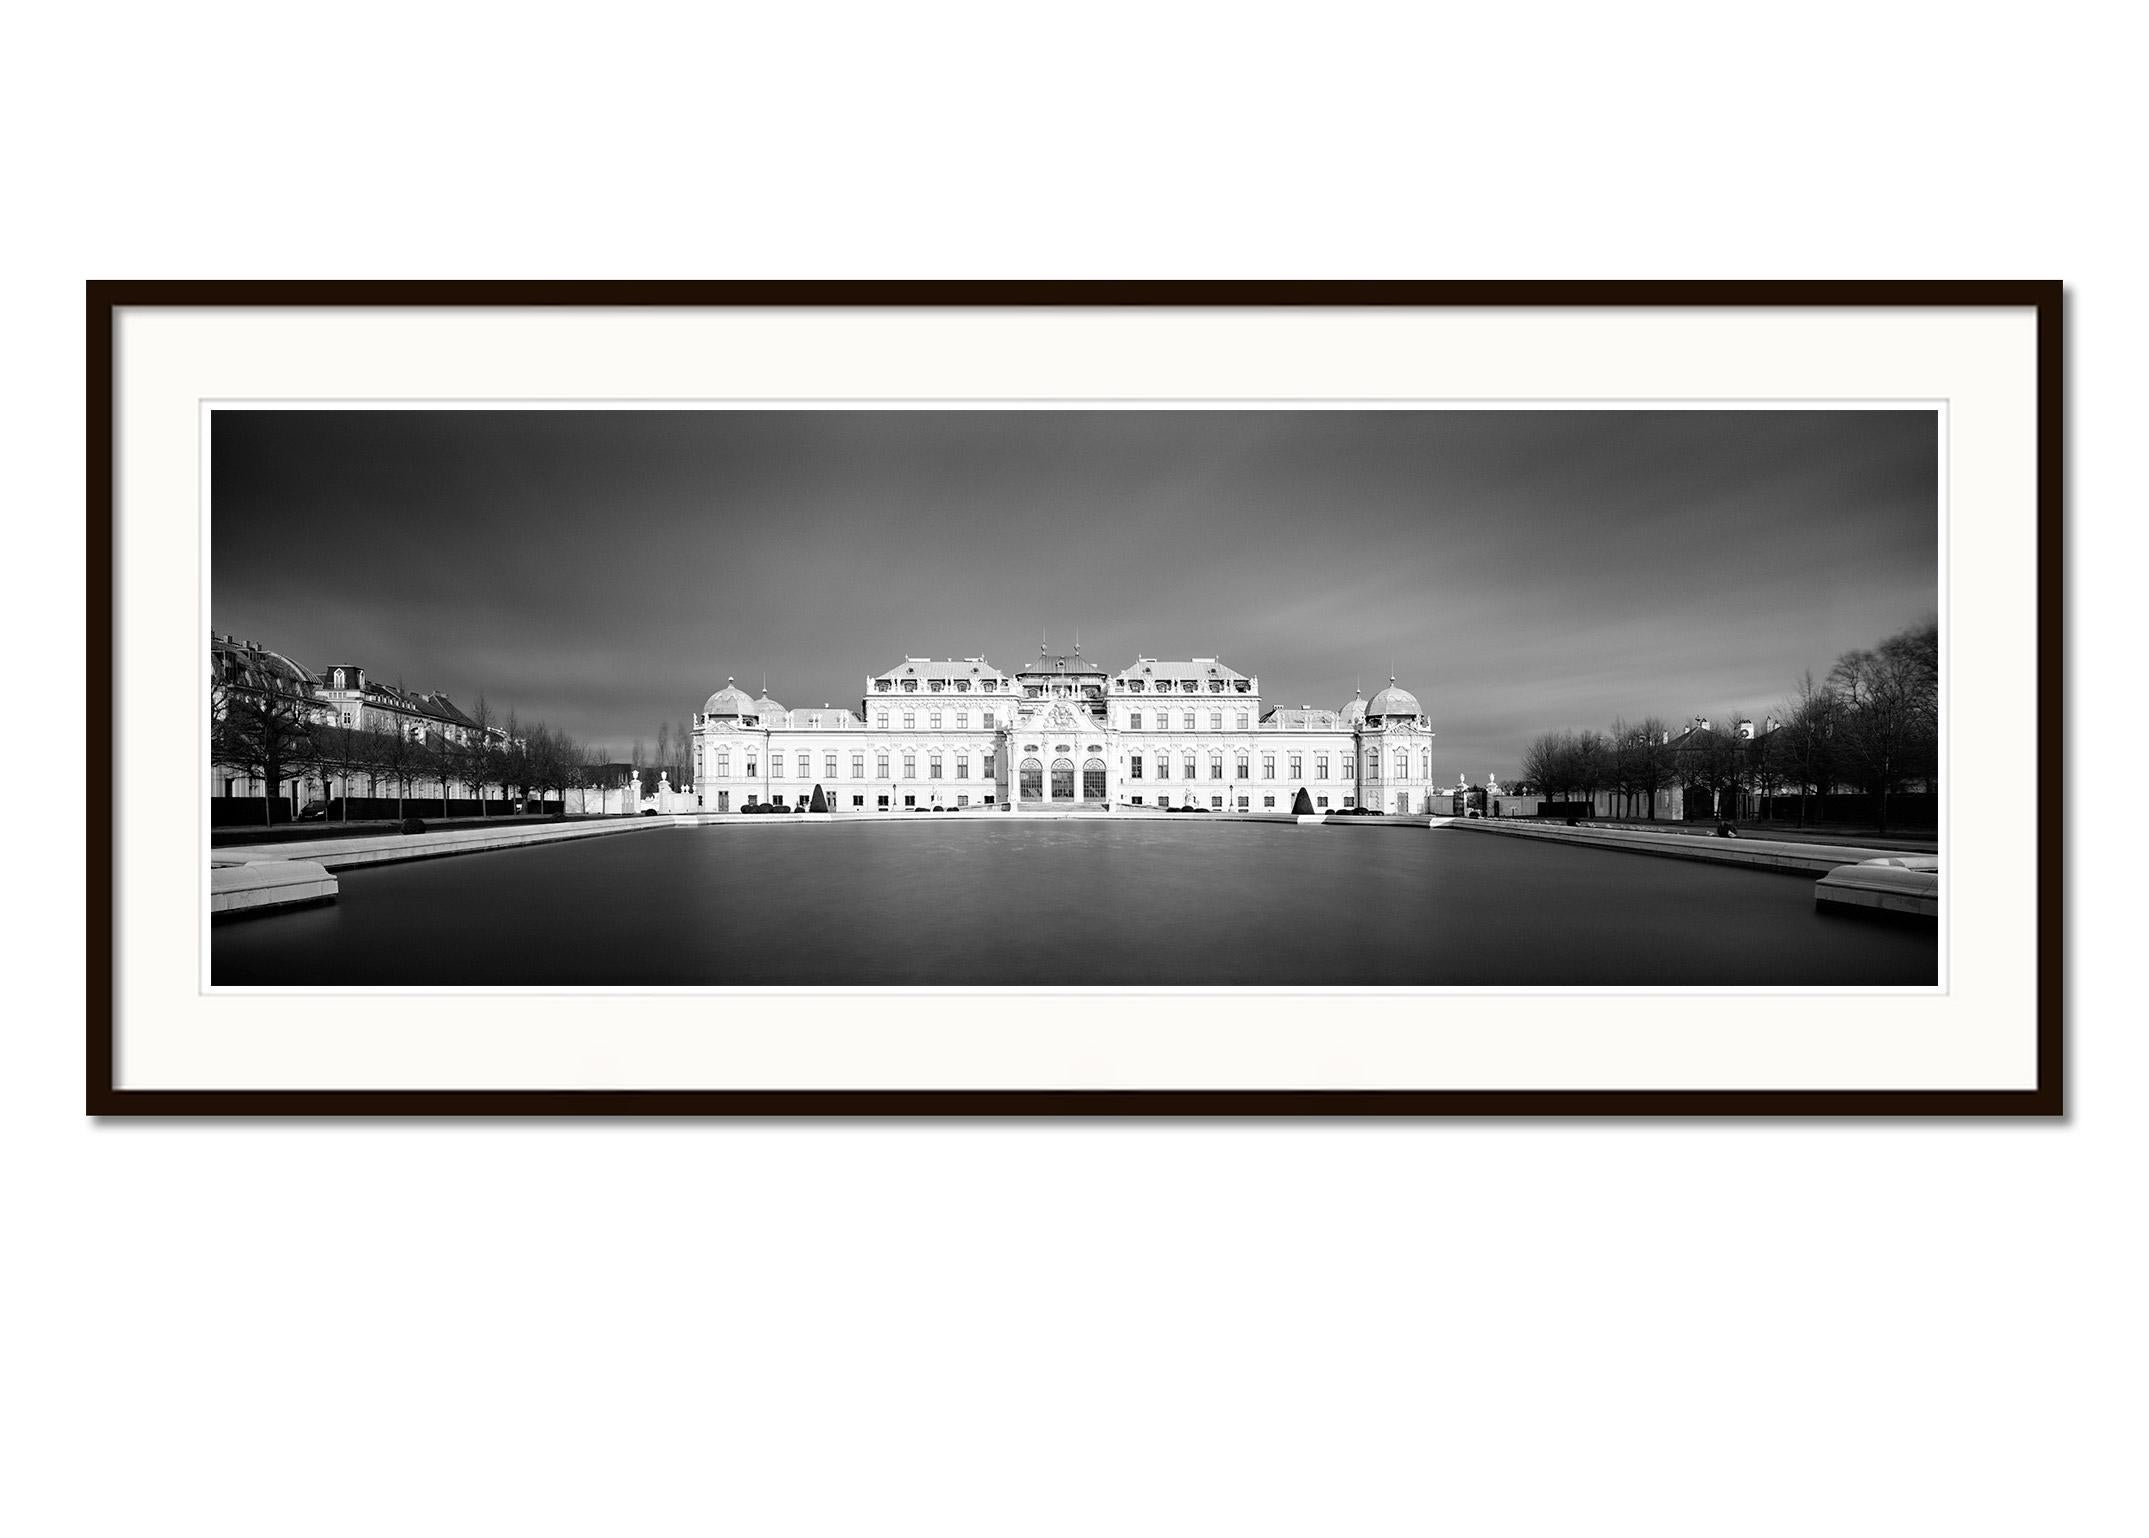 Oberes Belvedere, Panorama, dunkler Himmel, Wien, schwarz-weiß Landschaftsfotografie (Grau), Black and White Photograph, von Gerald Berghammer